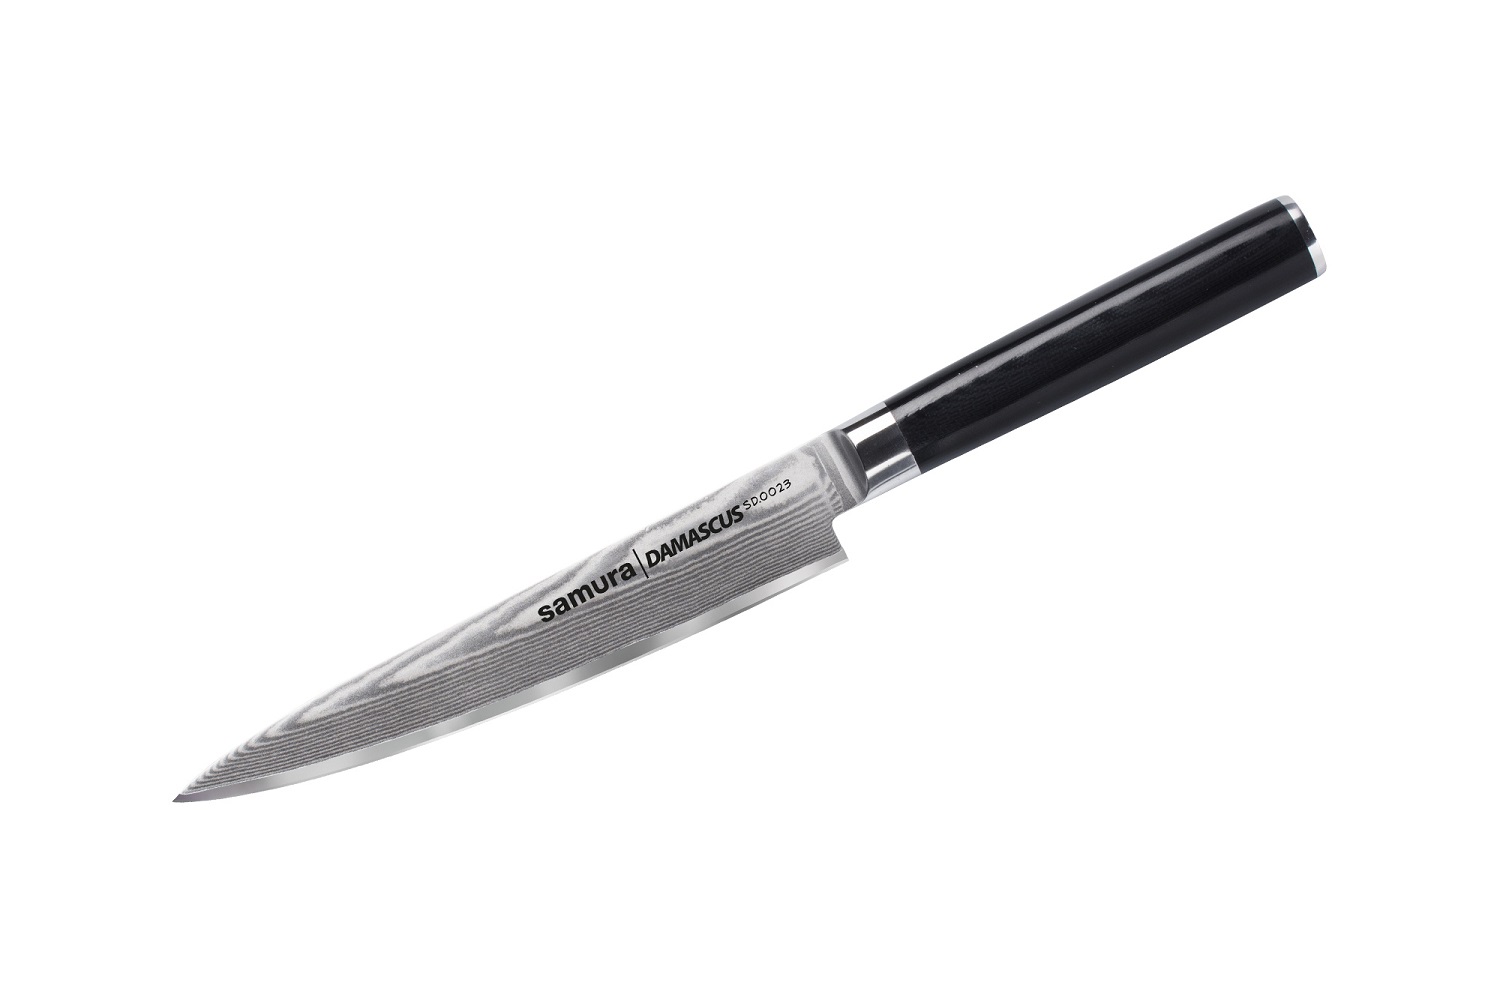 Нож Samura универсальный Damascus, 15 см, G-10, дамаск 67 слоев нож кухонный для хлеба samura damascus sd 0055 16 g 10 дамаск 67 слоев 230 мм